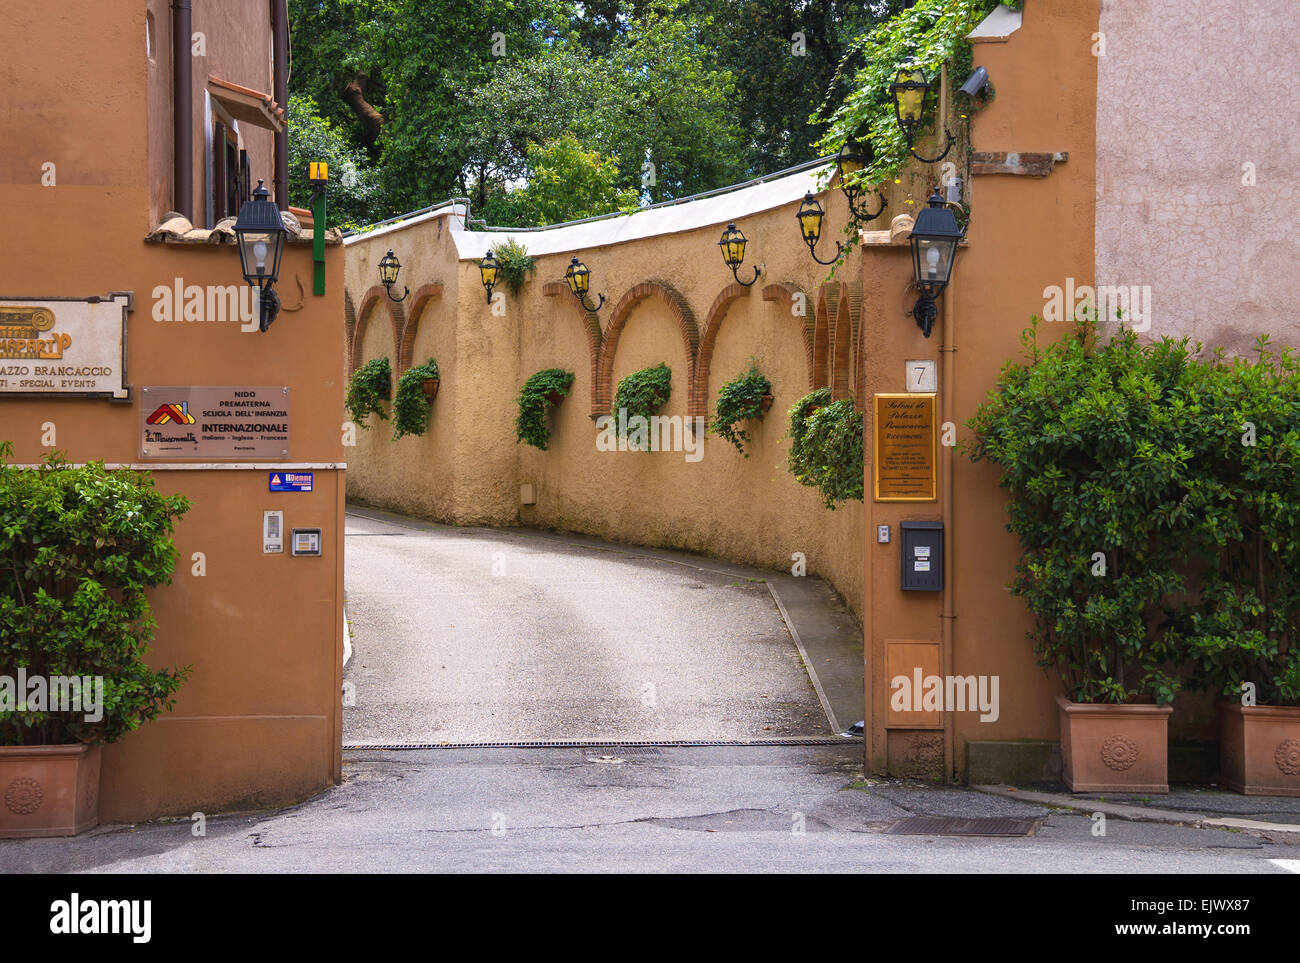 Roma, Italia - 03 maggio 2014: ingresso del cortile del famoso e lussuoso palazzo brancaccio in roma, Italia Foto Stock